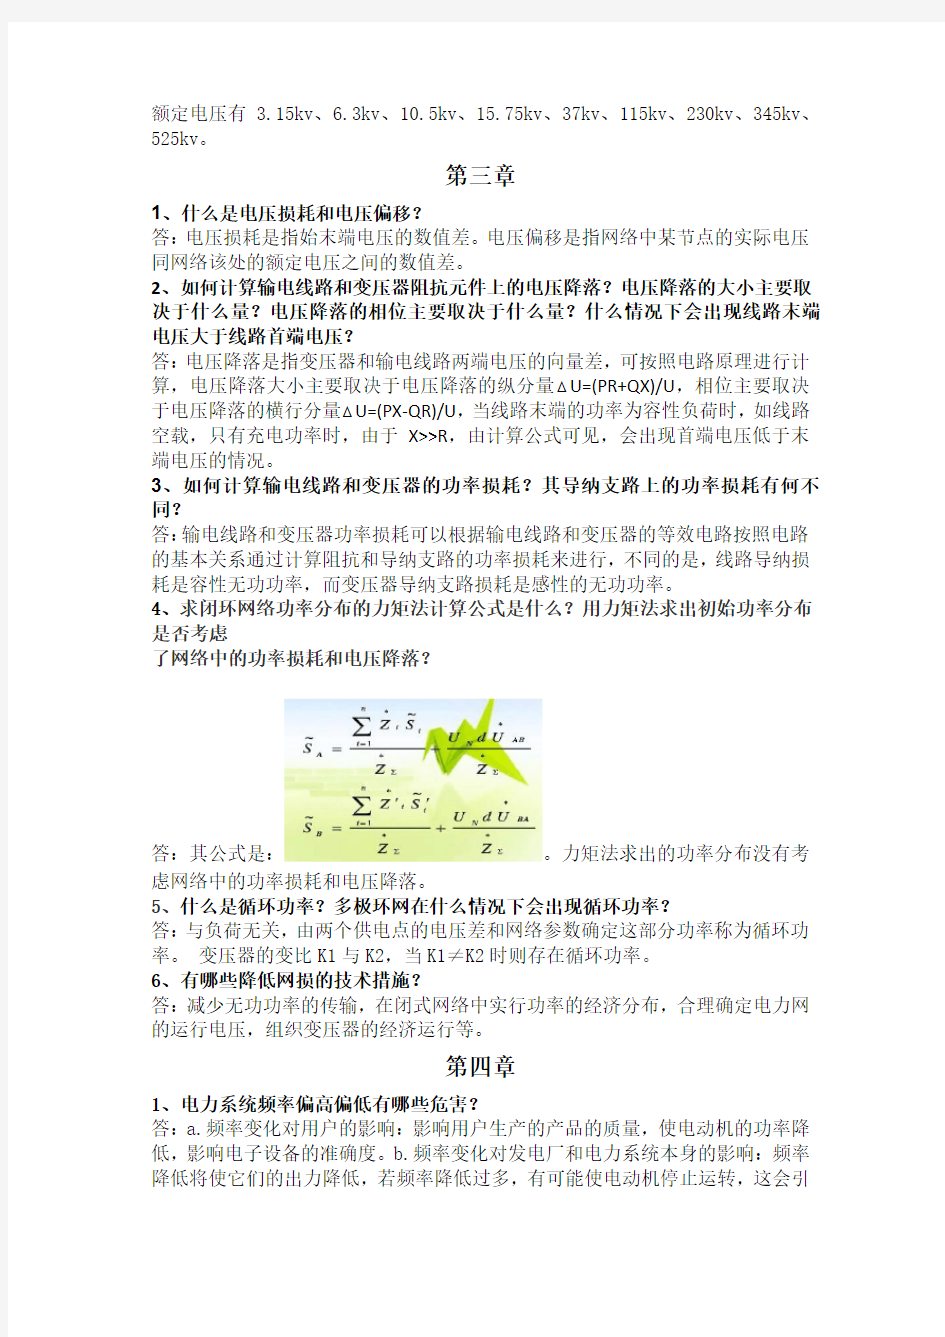 电力系统分析理论(第二版 刘天琪 邱晓燕)课后思考题答案(不包括计算)